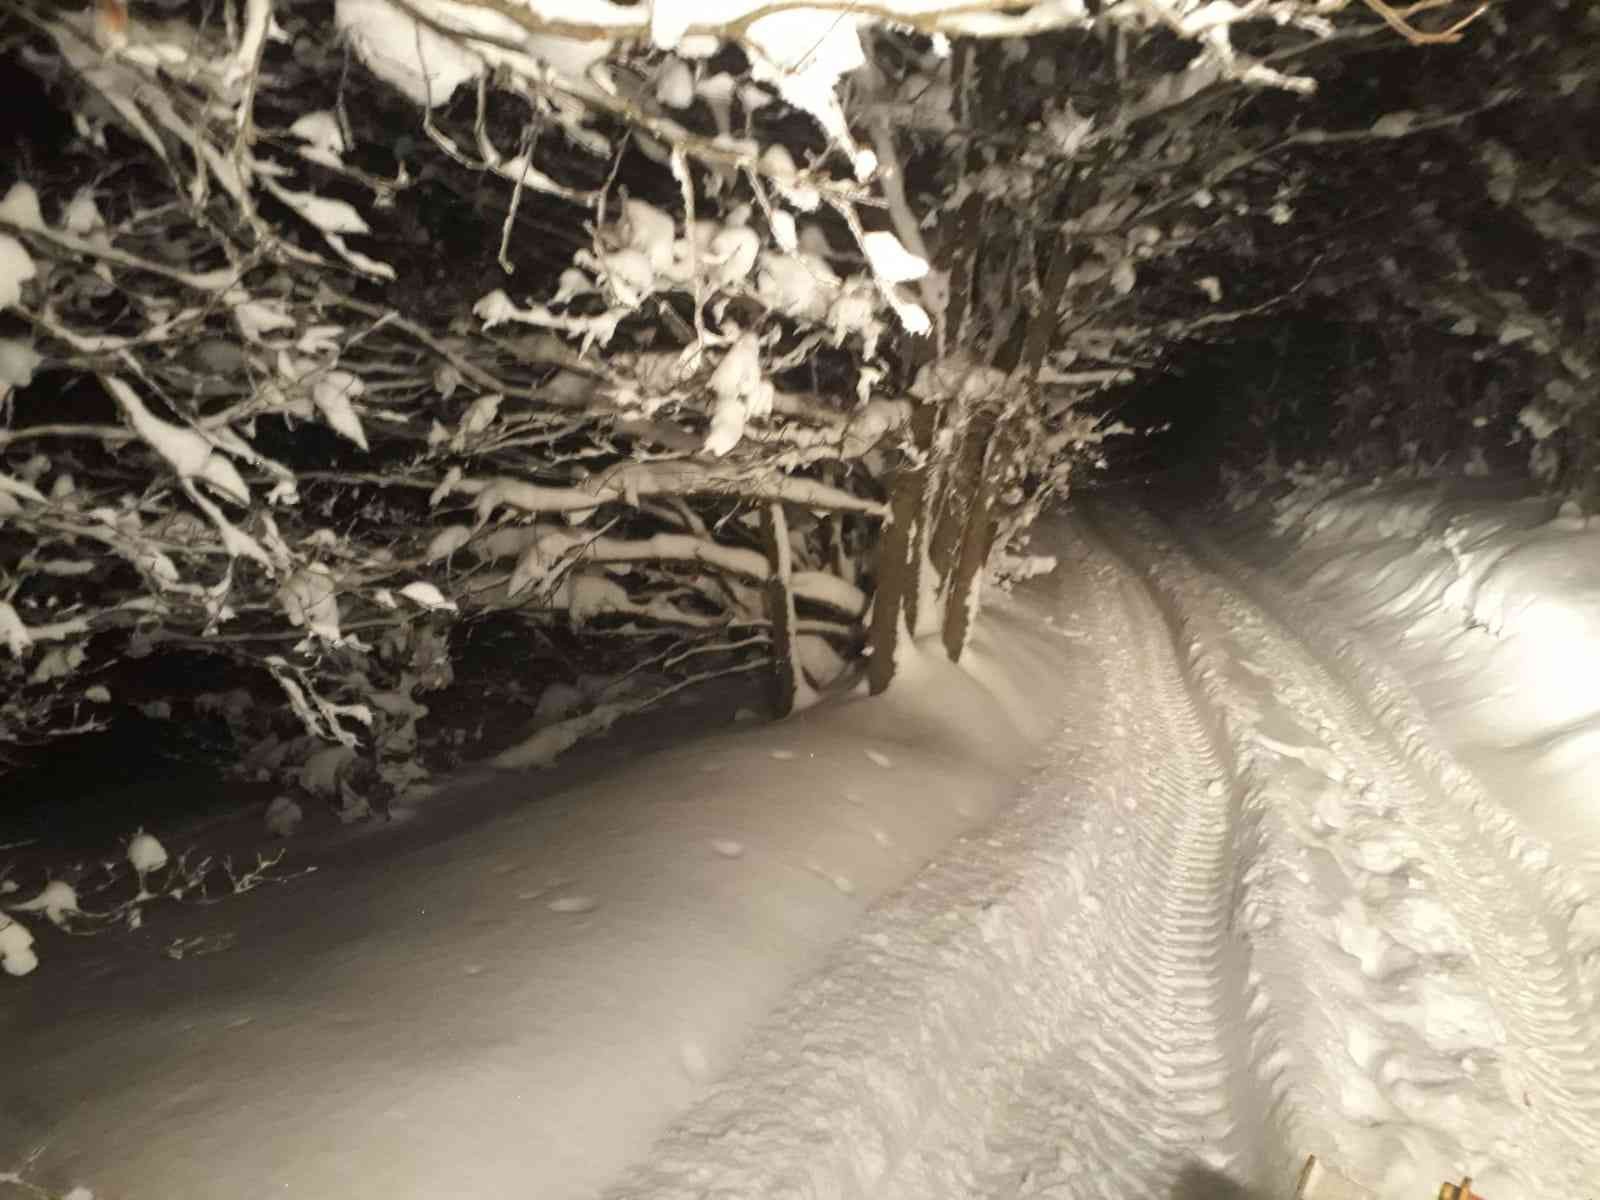 Bursa’da mangal yapmak için gittikleri ormanlık alanda kar nedeniyle mahsur kalan 5 kişi ekipler tarafından kurtarıldı